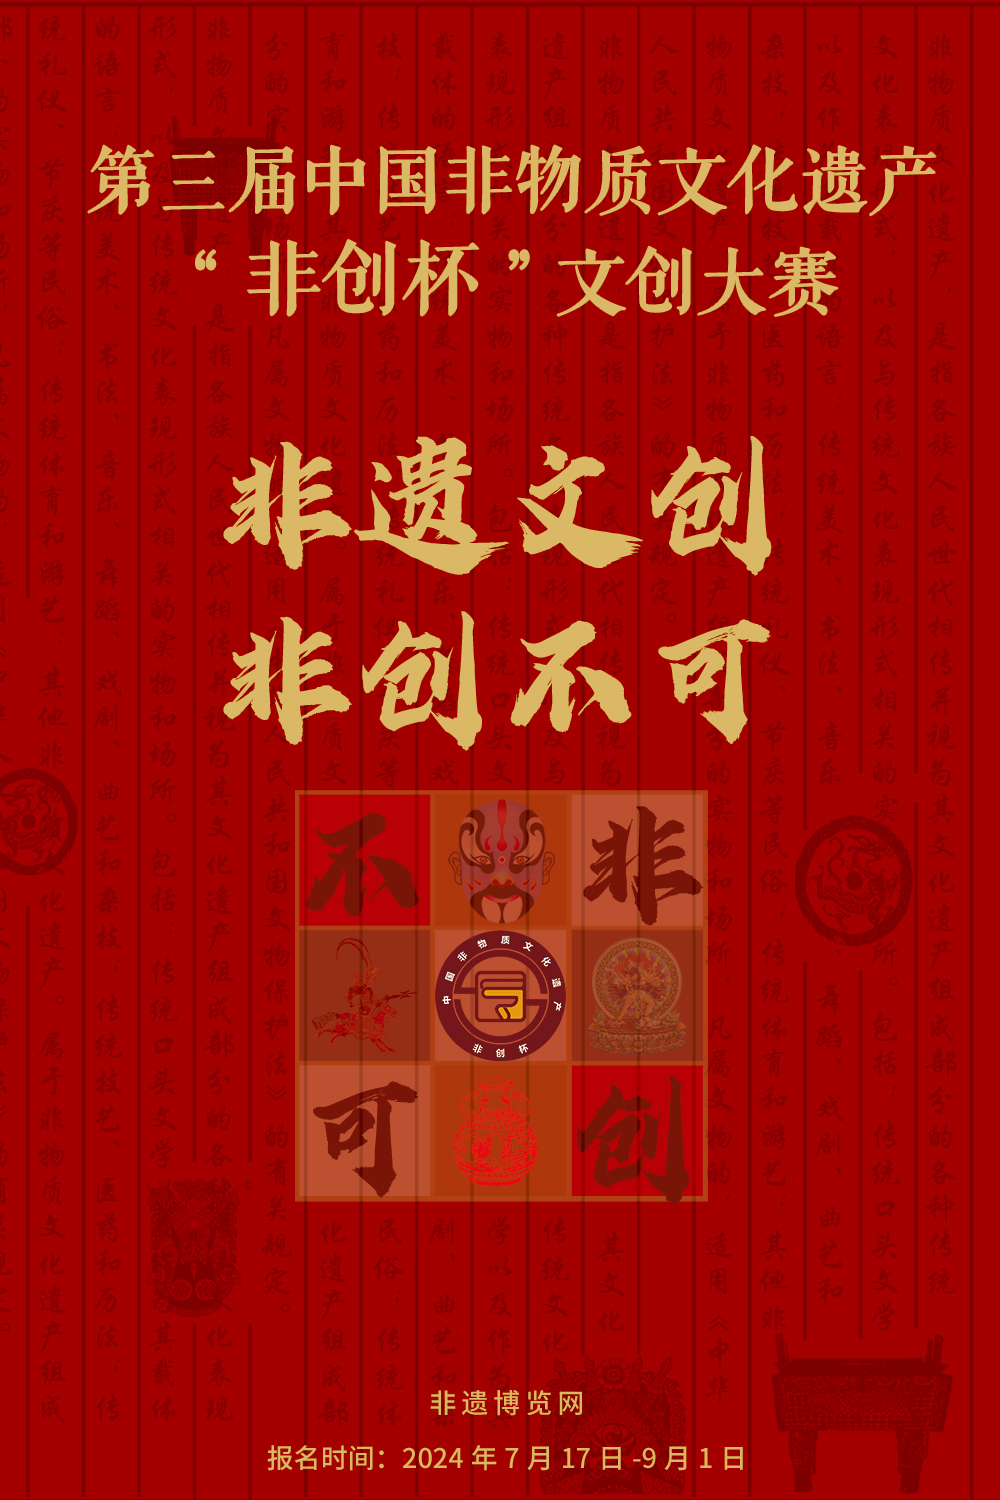 关于举办第三届中国非物质文化遗产 “非创杯”文创大赛的通知